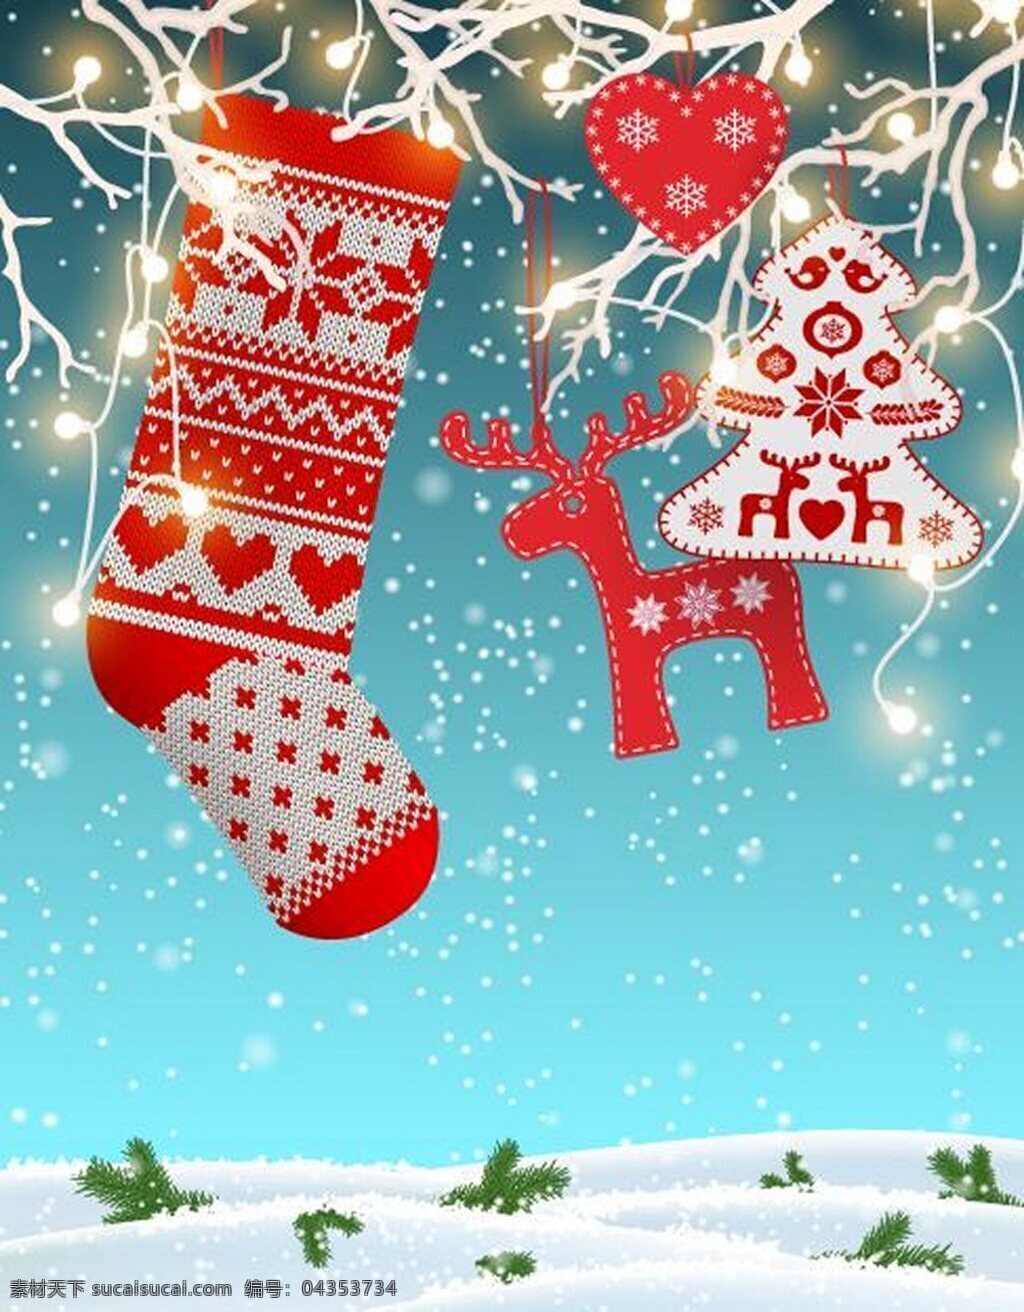 圣诞挂件 背景 雪花 雪地 长筒袜 礼物 灯光 挂件 背景素材